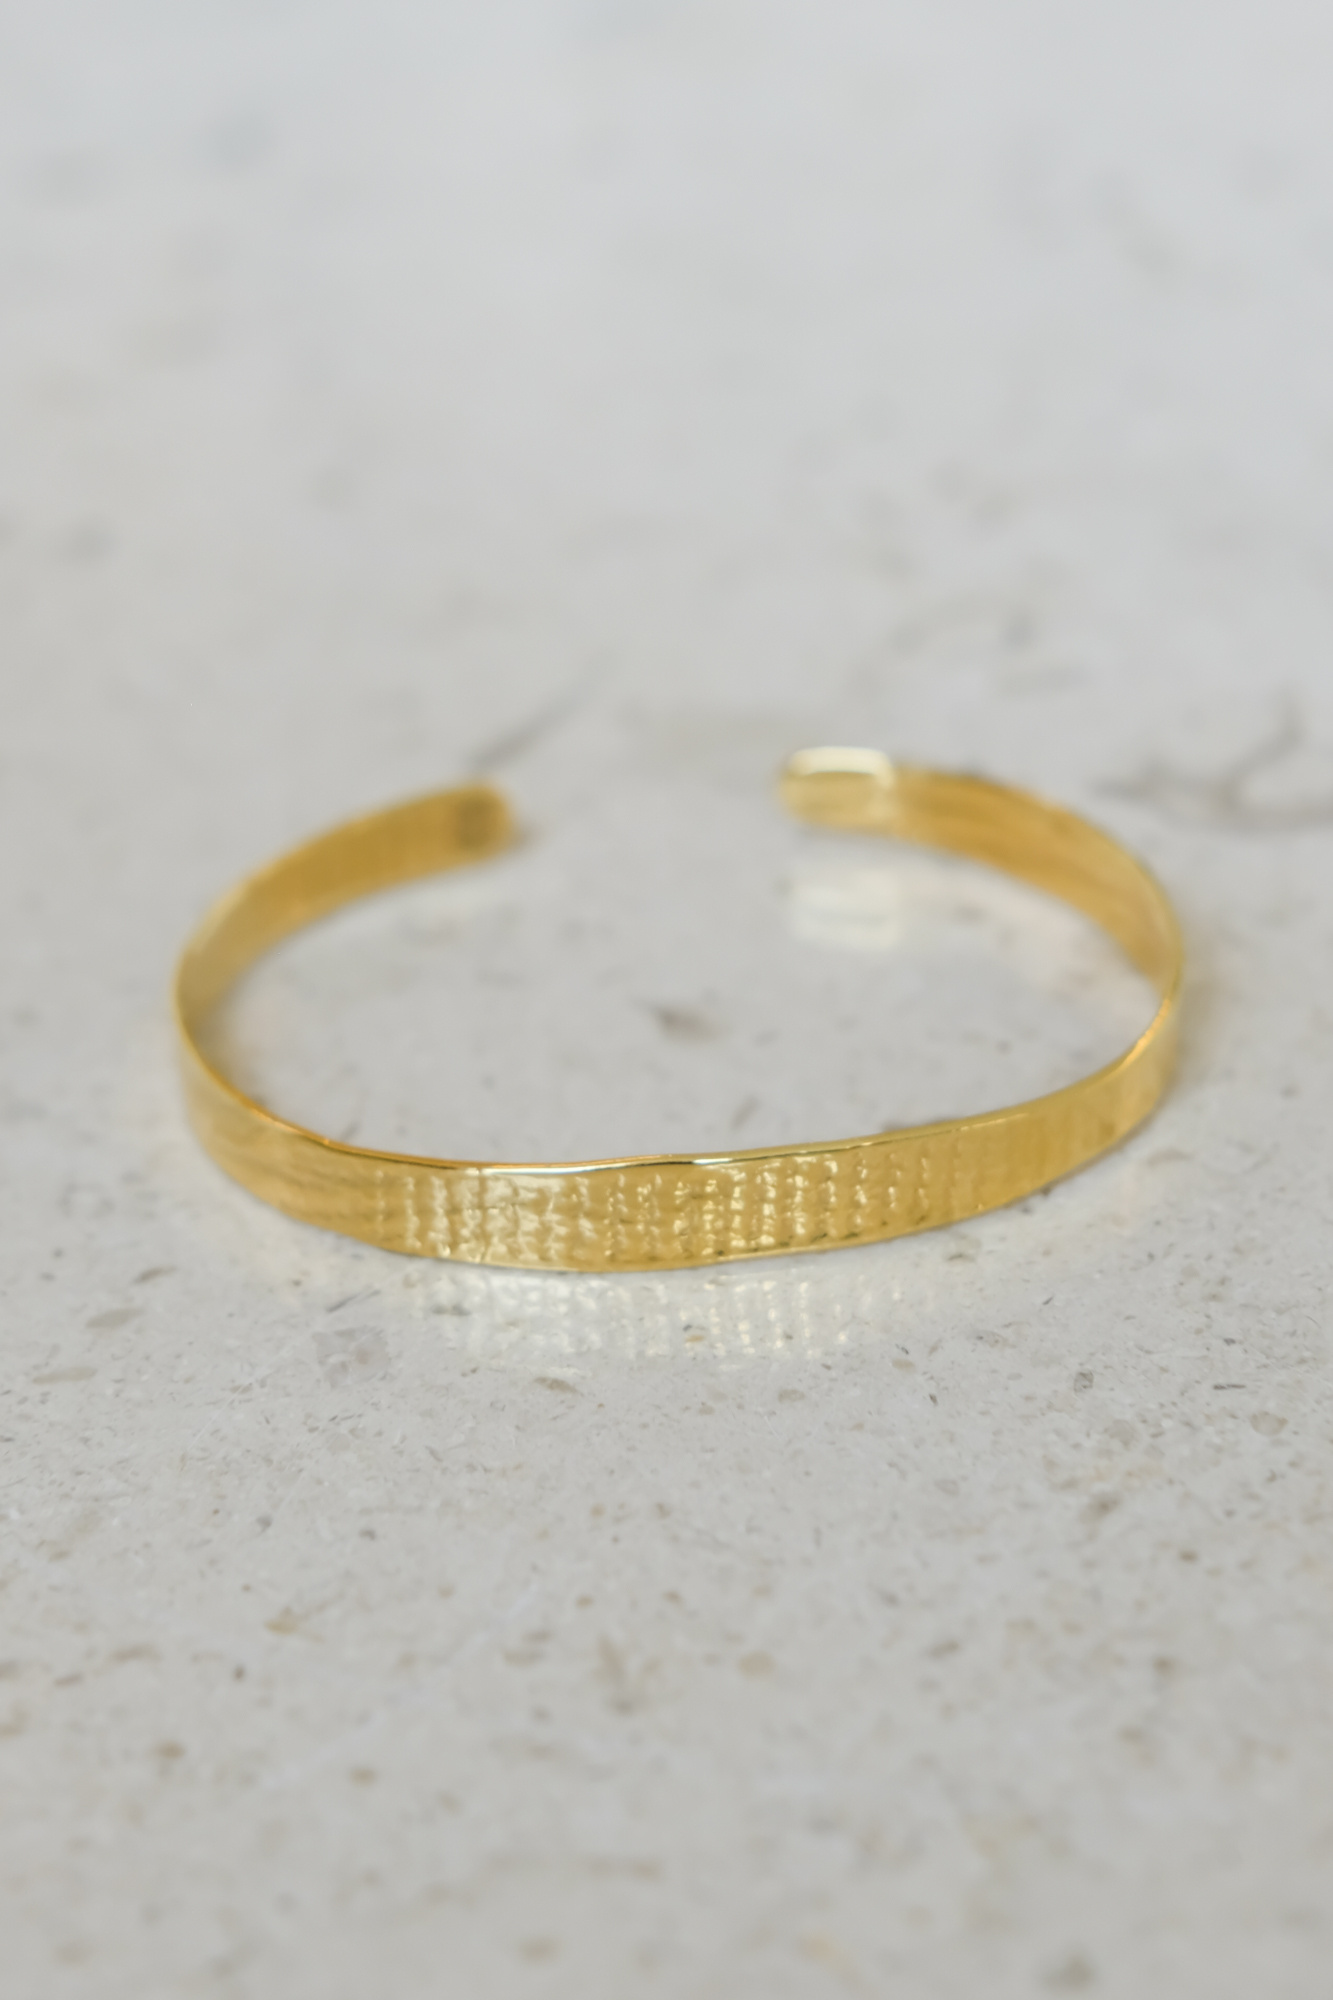 tweek-eek olong small bracelet gold